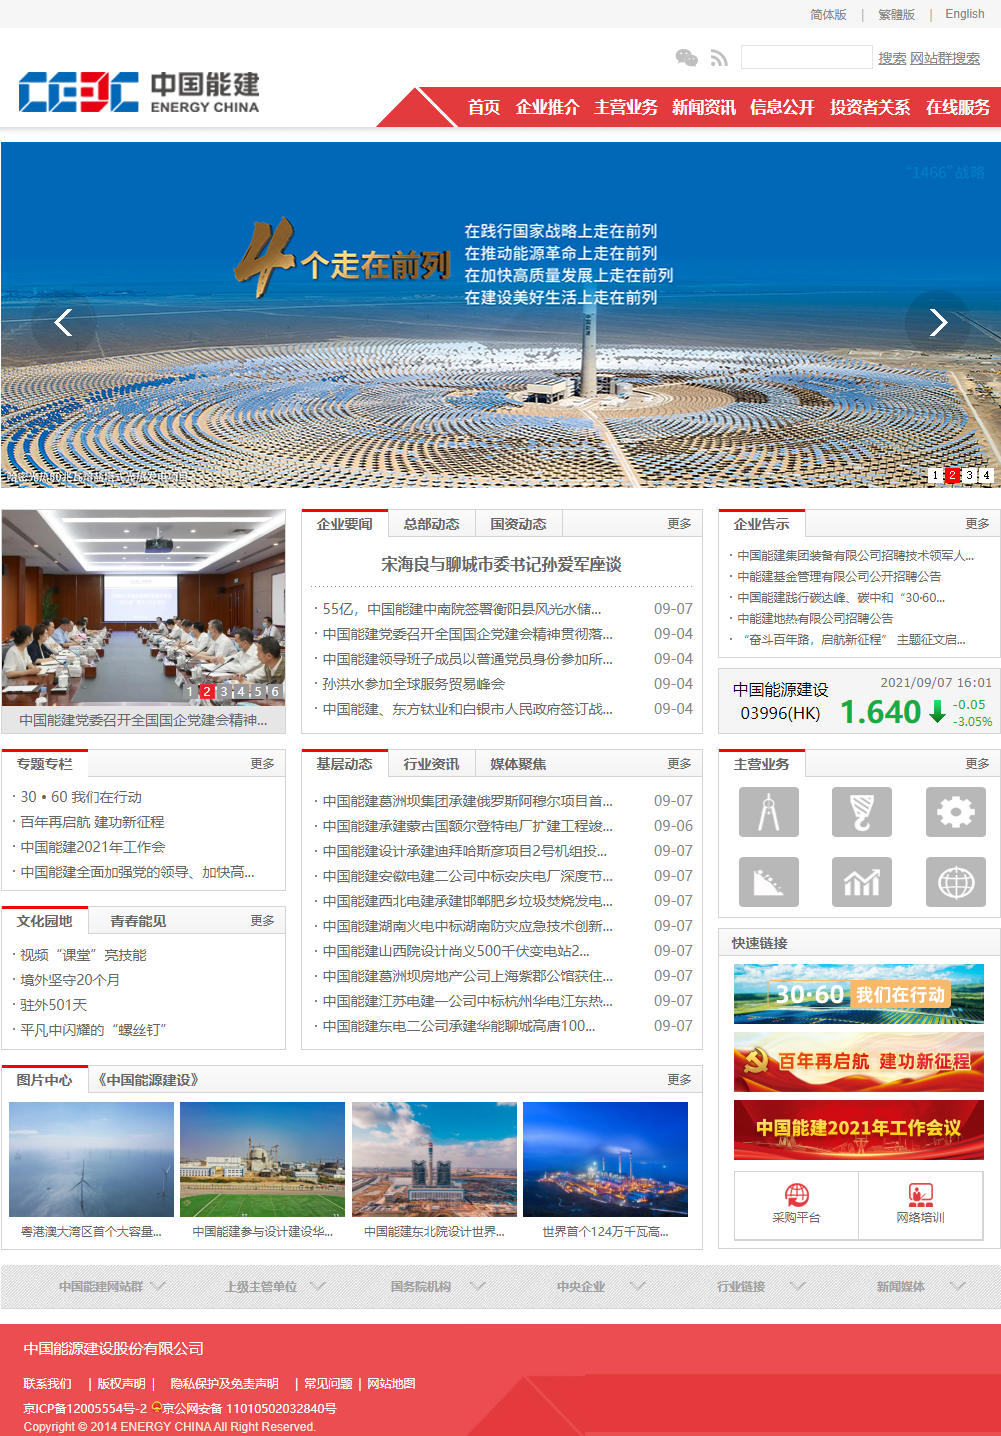 中国能源建设集团有限公司网站案例